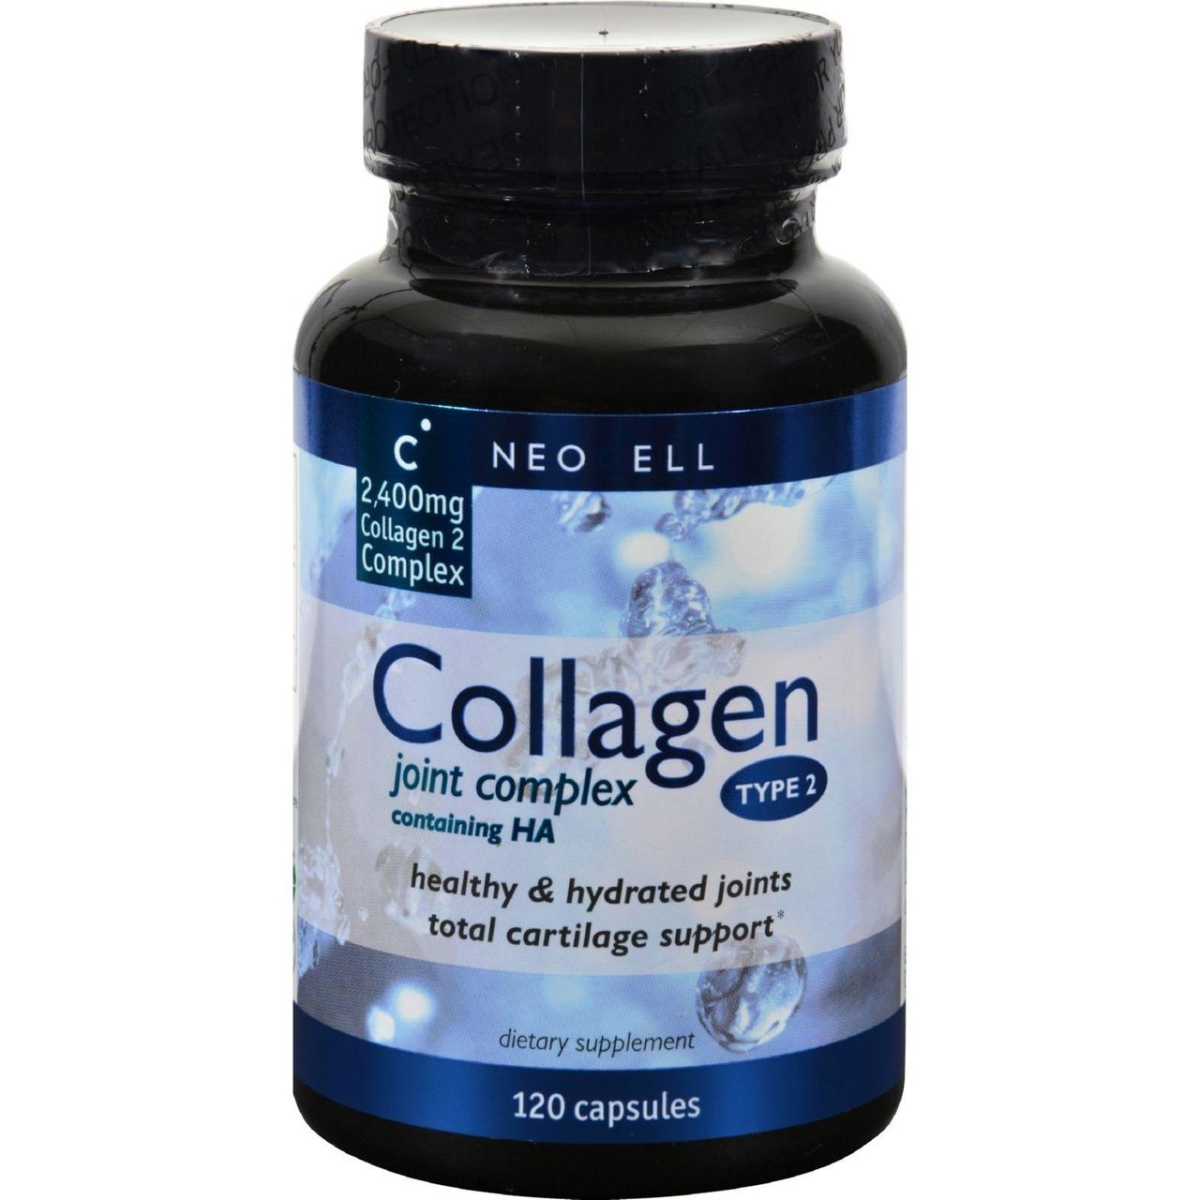 Hg0426254 Collagen Type 2 - 120 Capsules